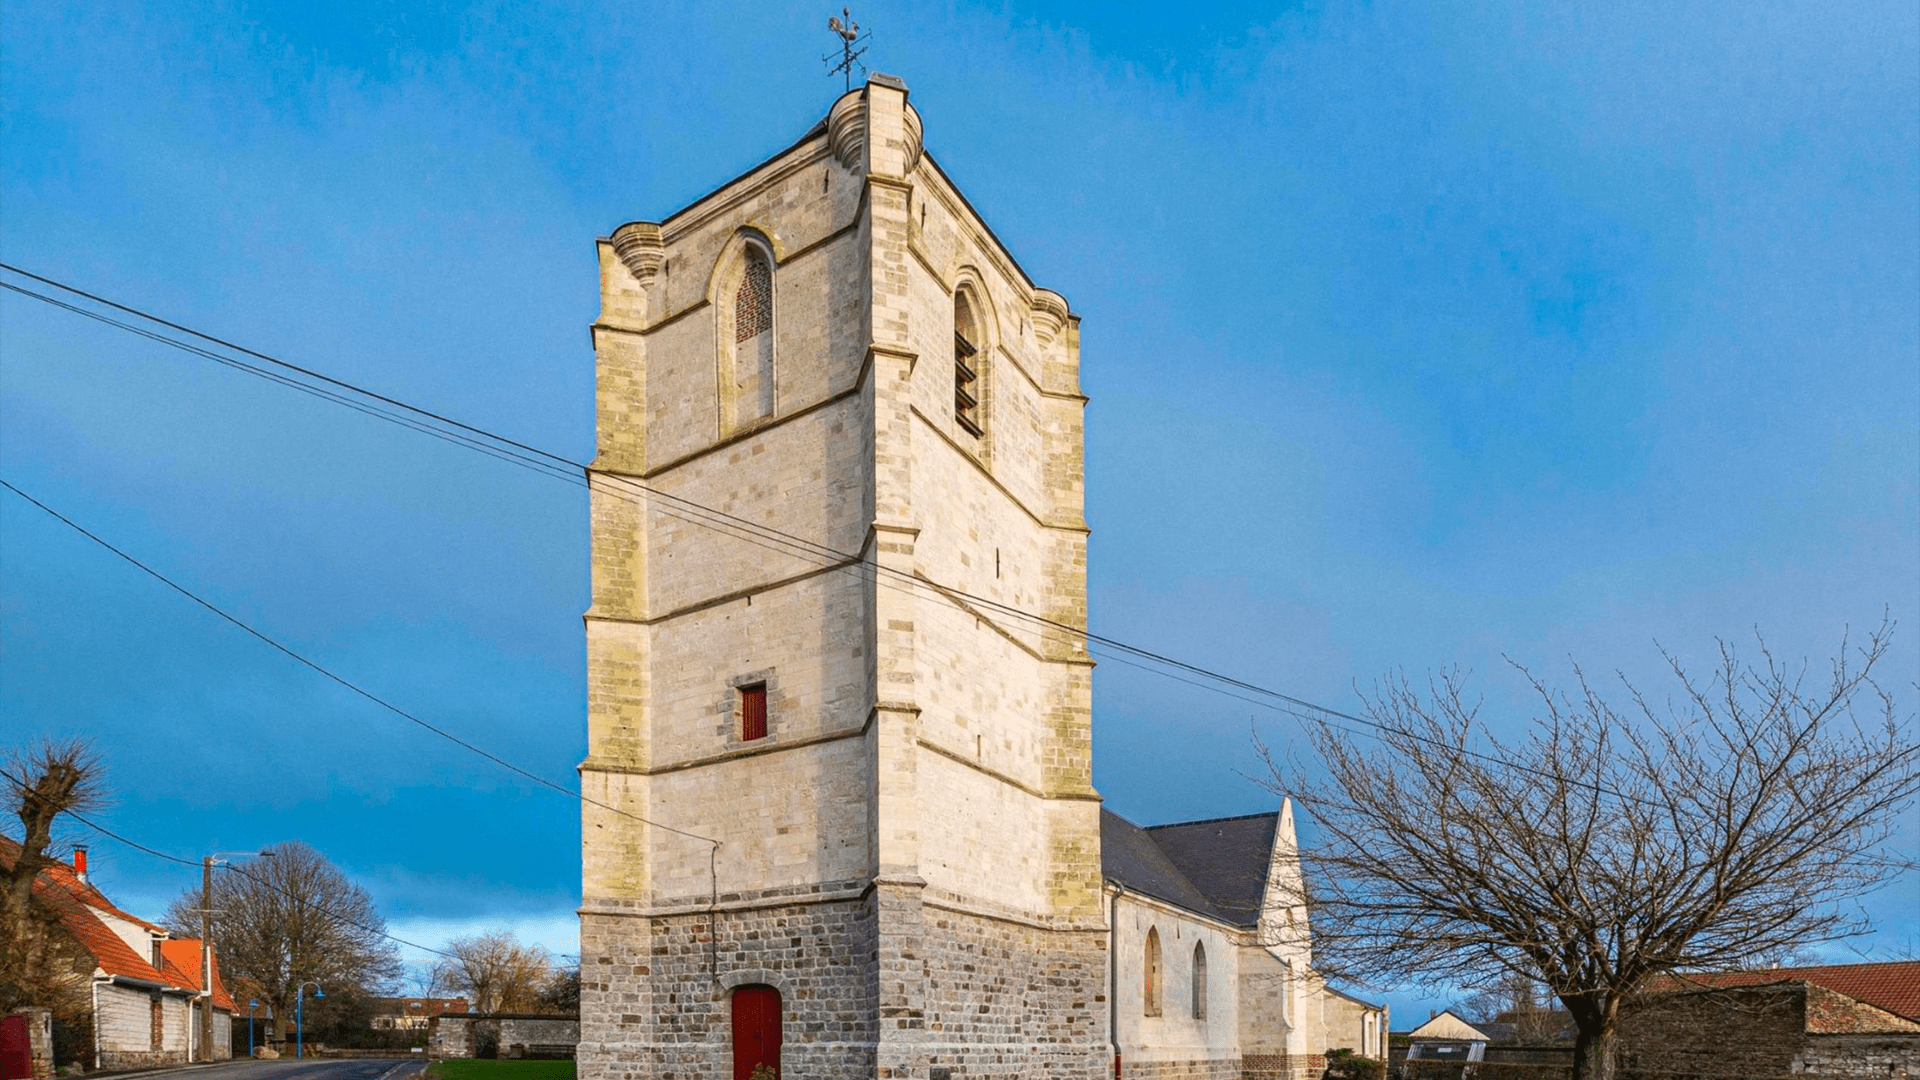 Découvrir l'église Saint-Vaast de Villers-au-Bois - Le Département du Pas-de-Calais - Villers-au-Bois - Artoiscope